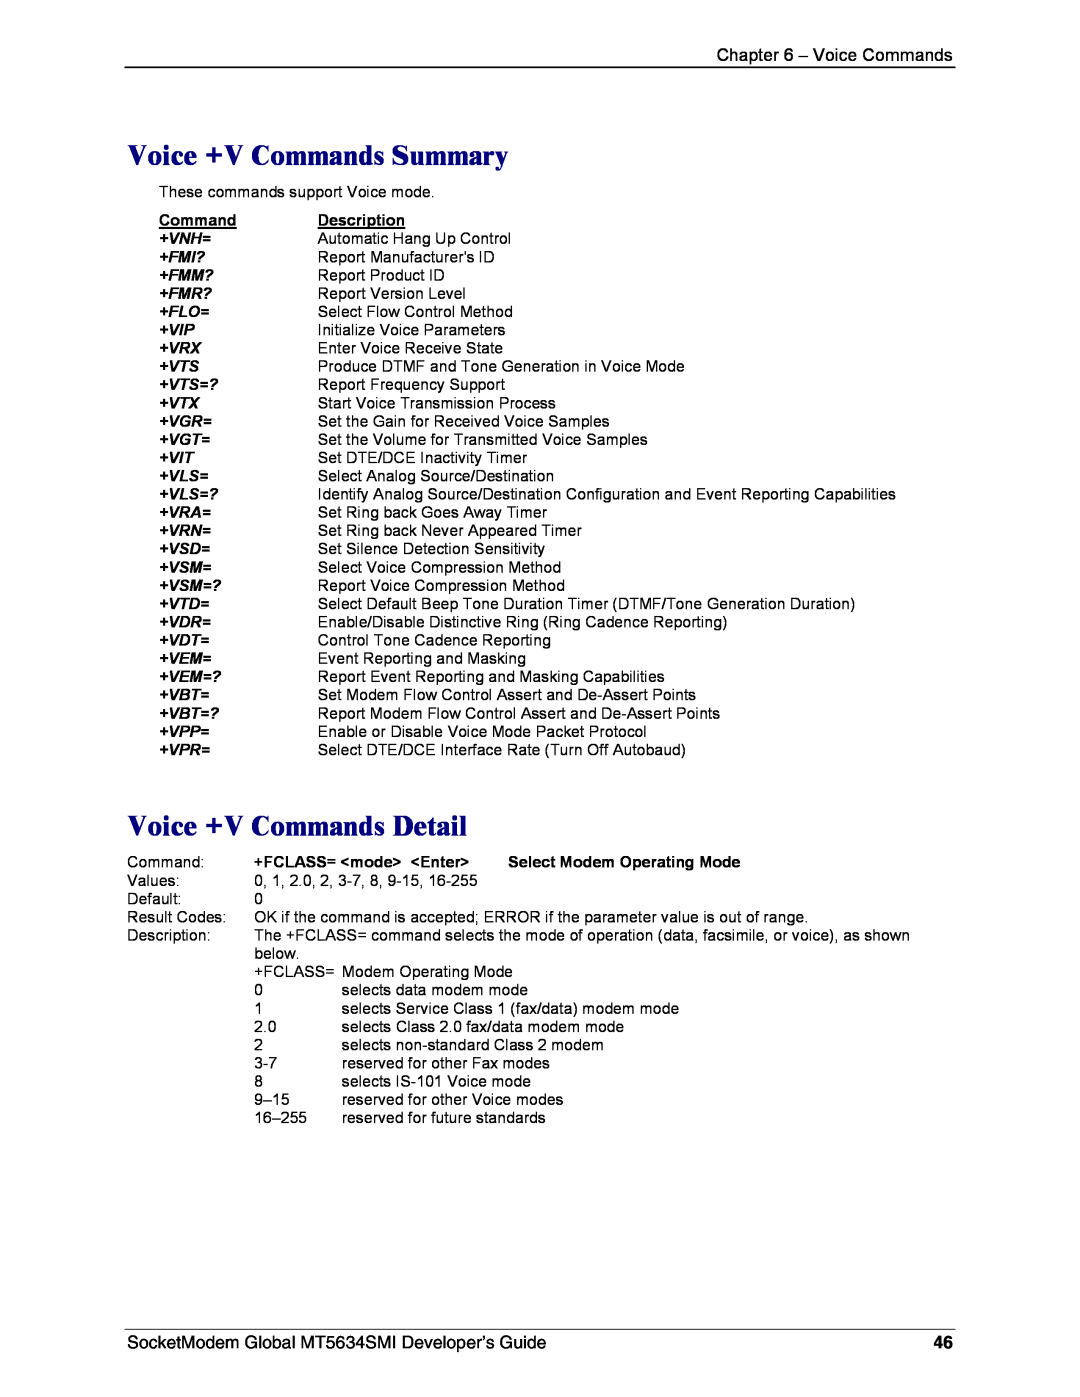 Technics MT5634SMI-92, MT5634SMI-34 manual Voice +V Commands Summary, Voice +V Commands Detail, Voice Commands 